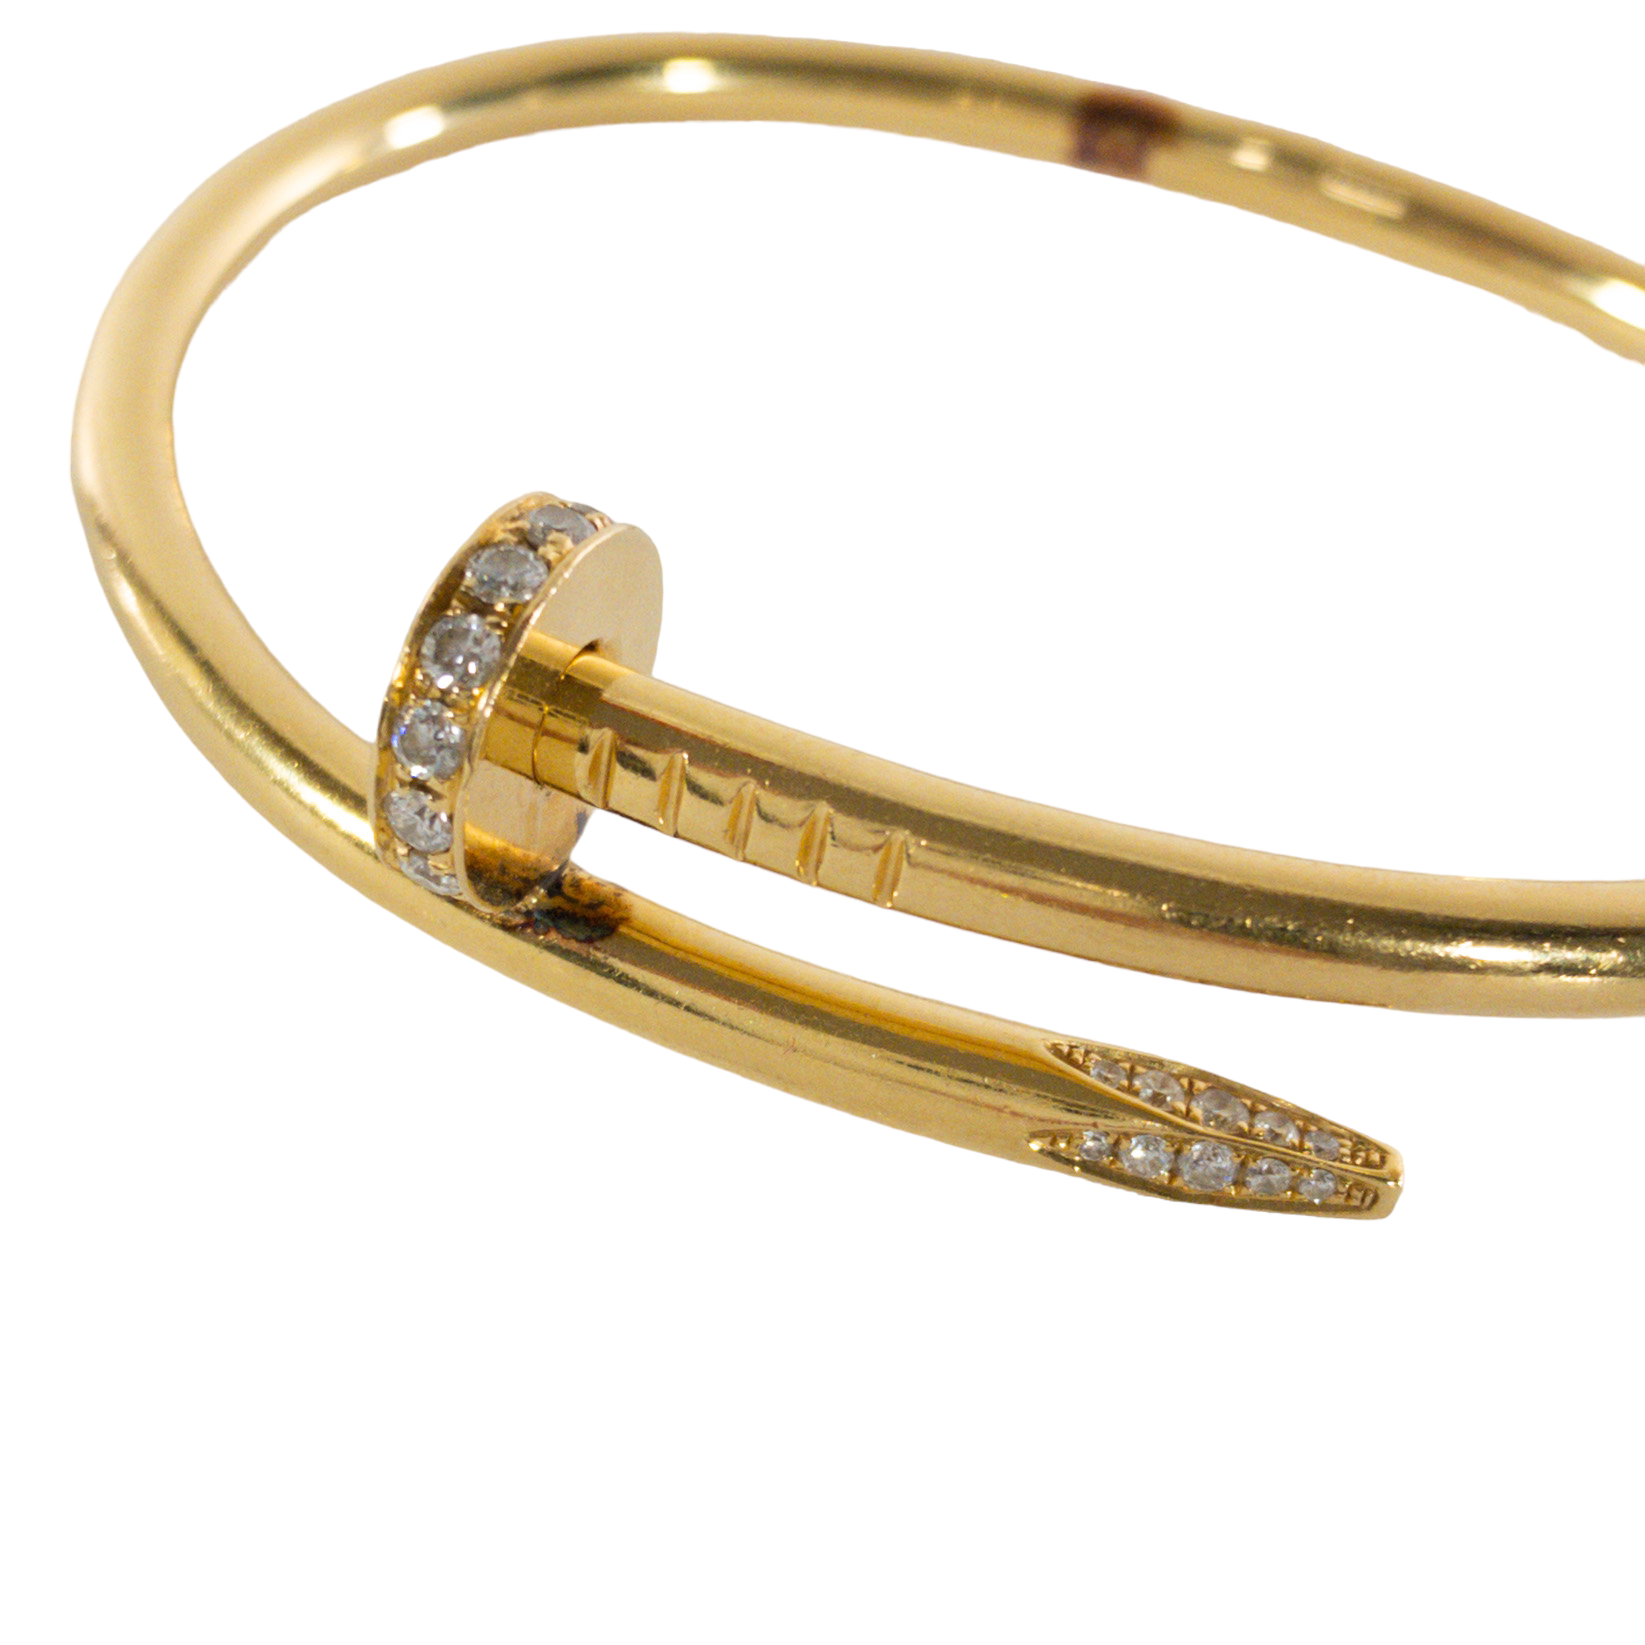 Cartier Juste un Clou Rose Gold Diamond Bracelet – CIRCA